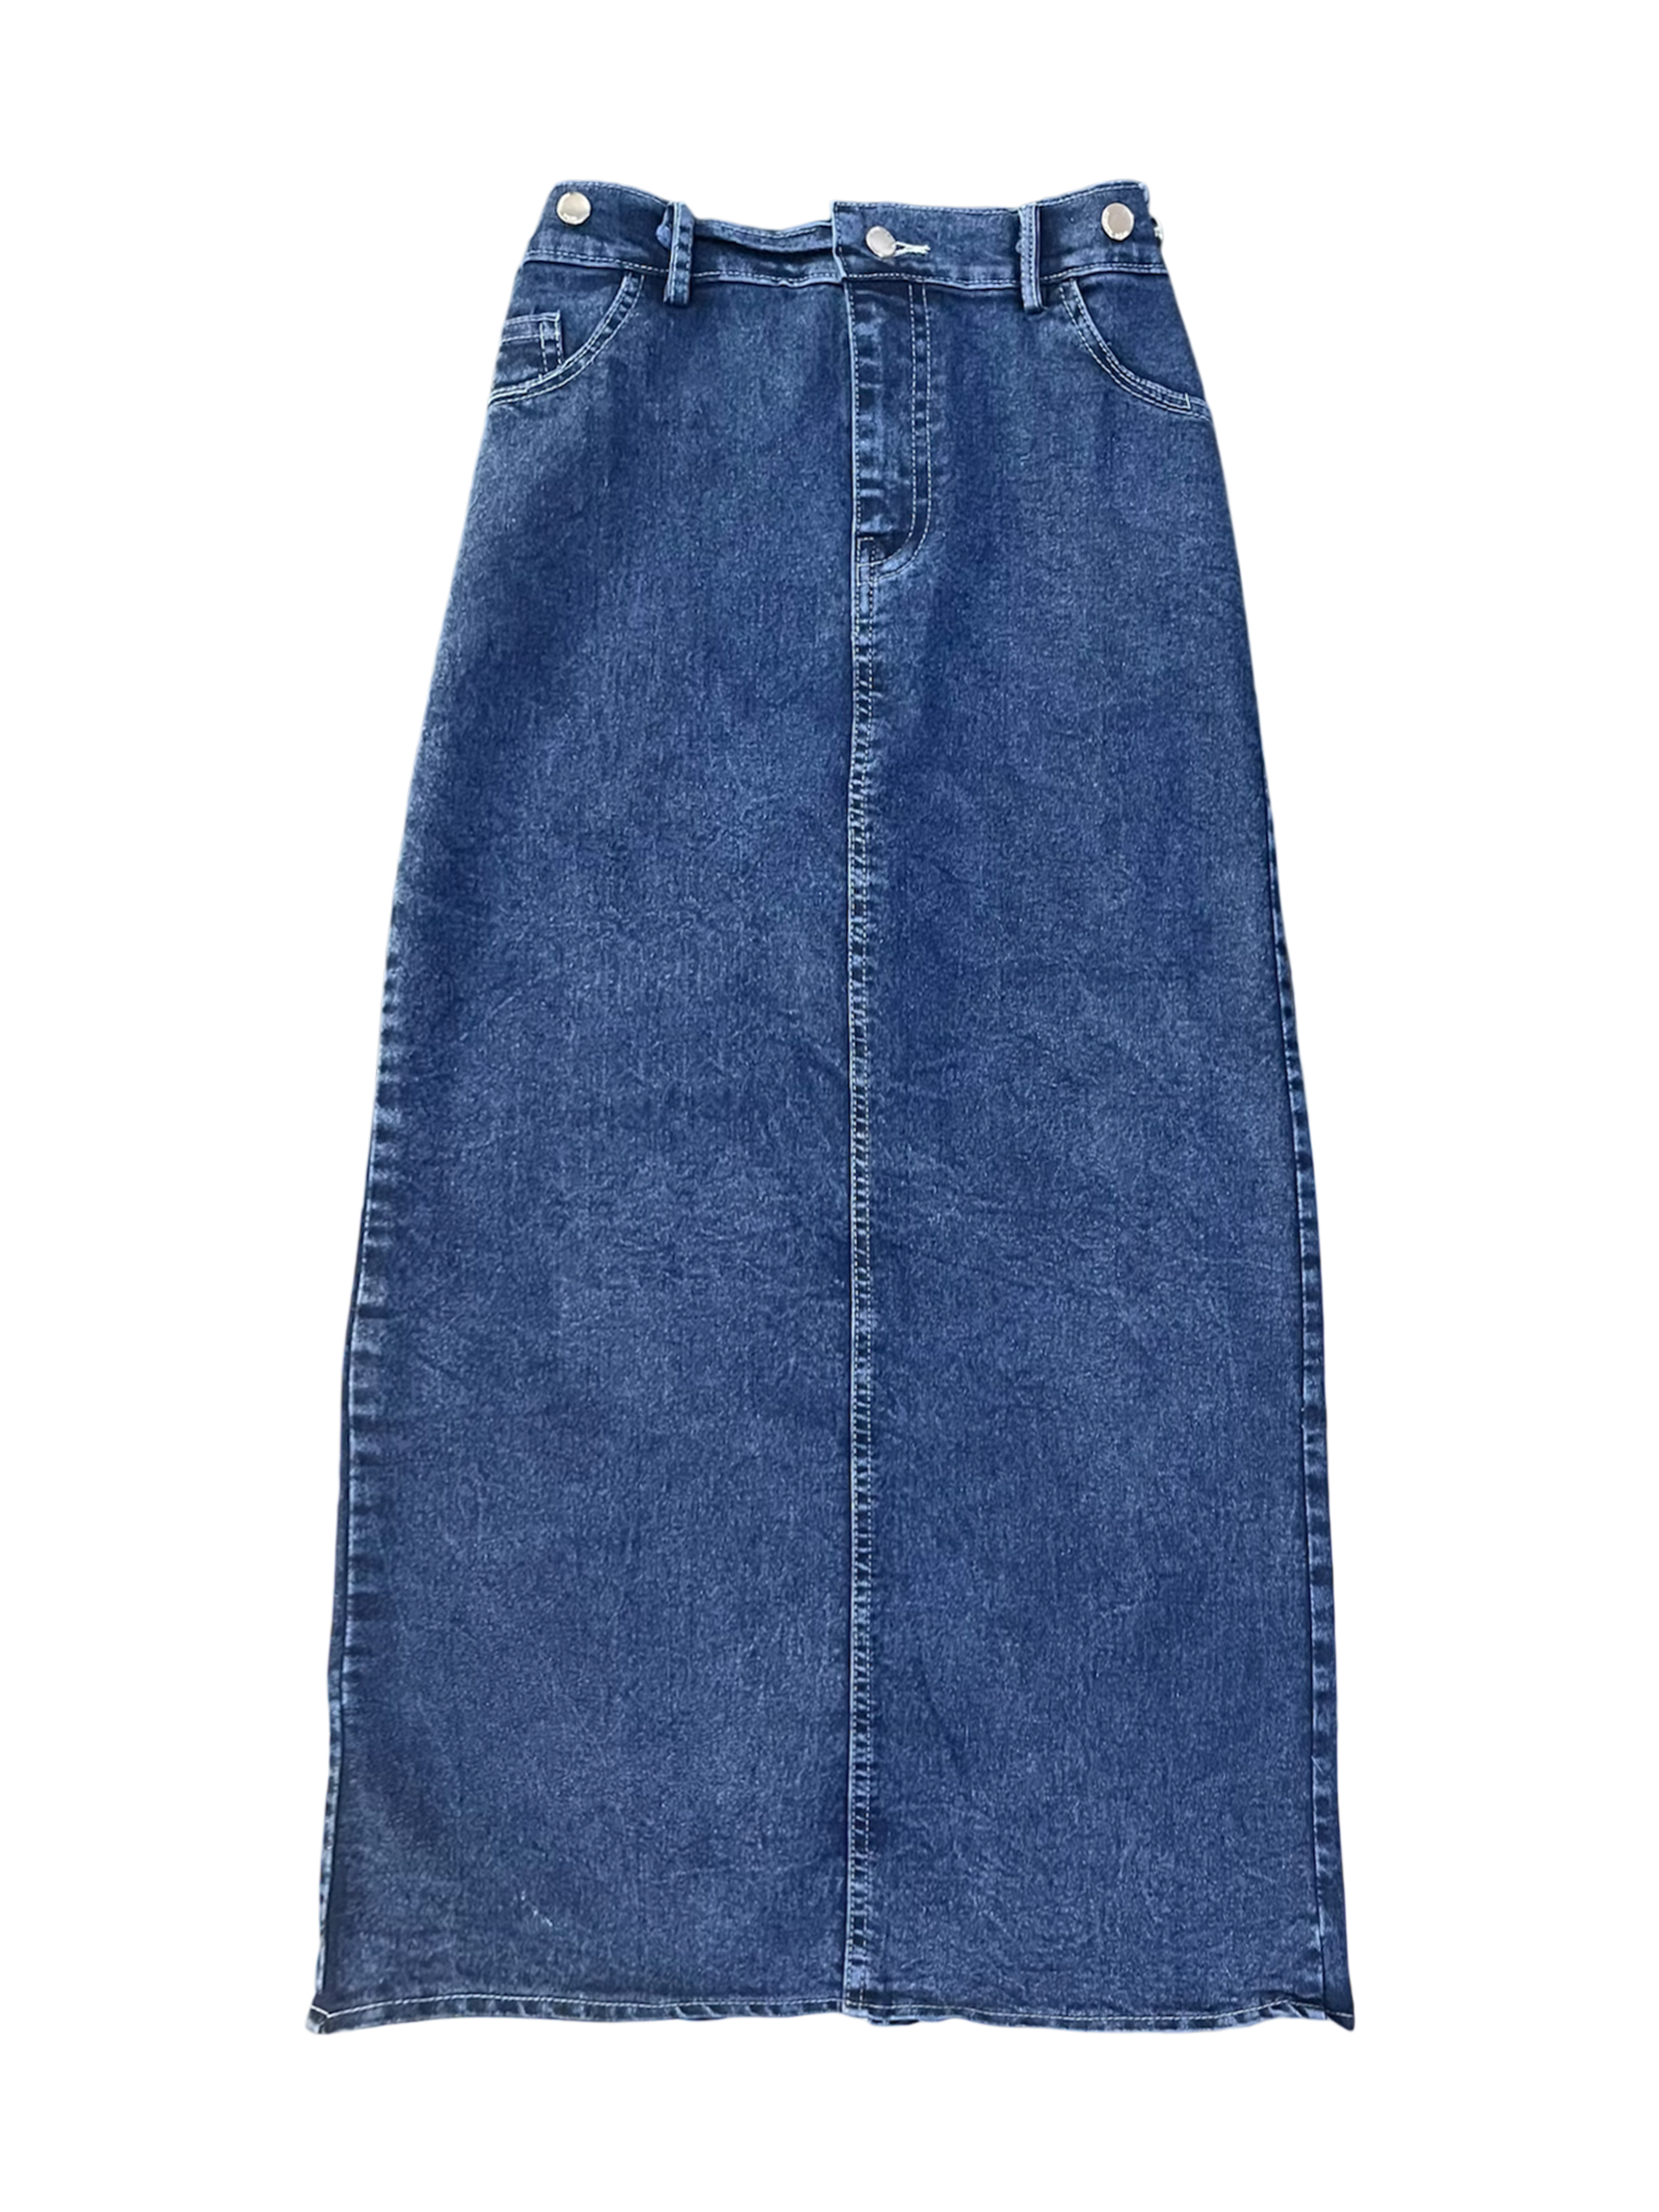 NewJeans Denim Skirt Dark Blue - Bling It On